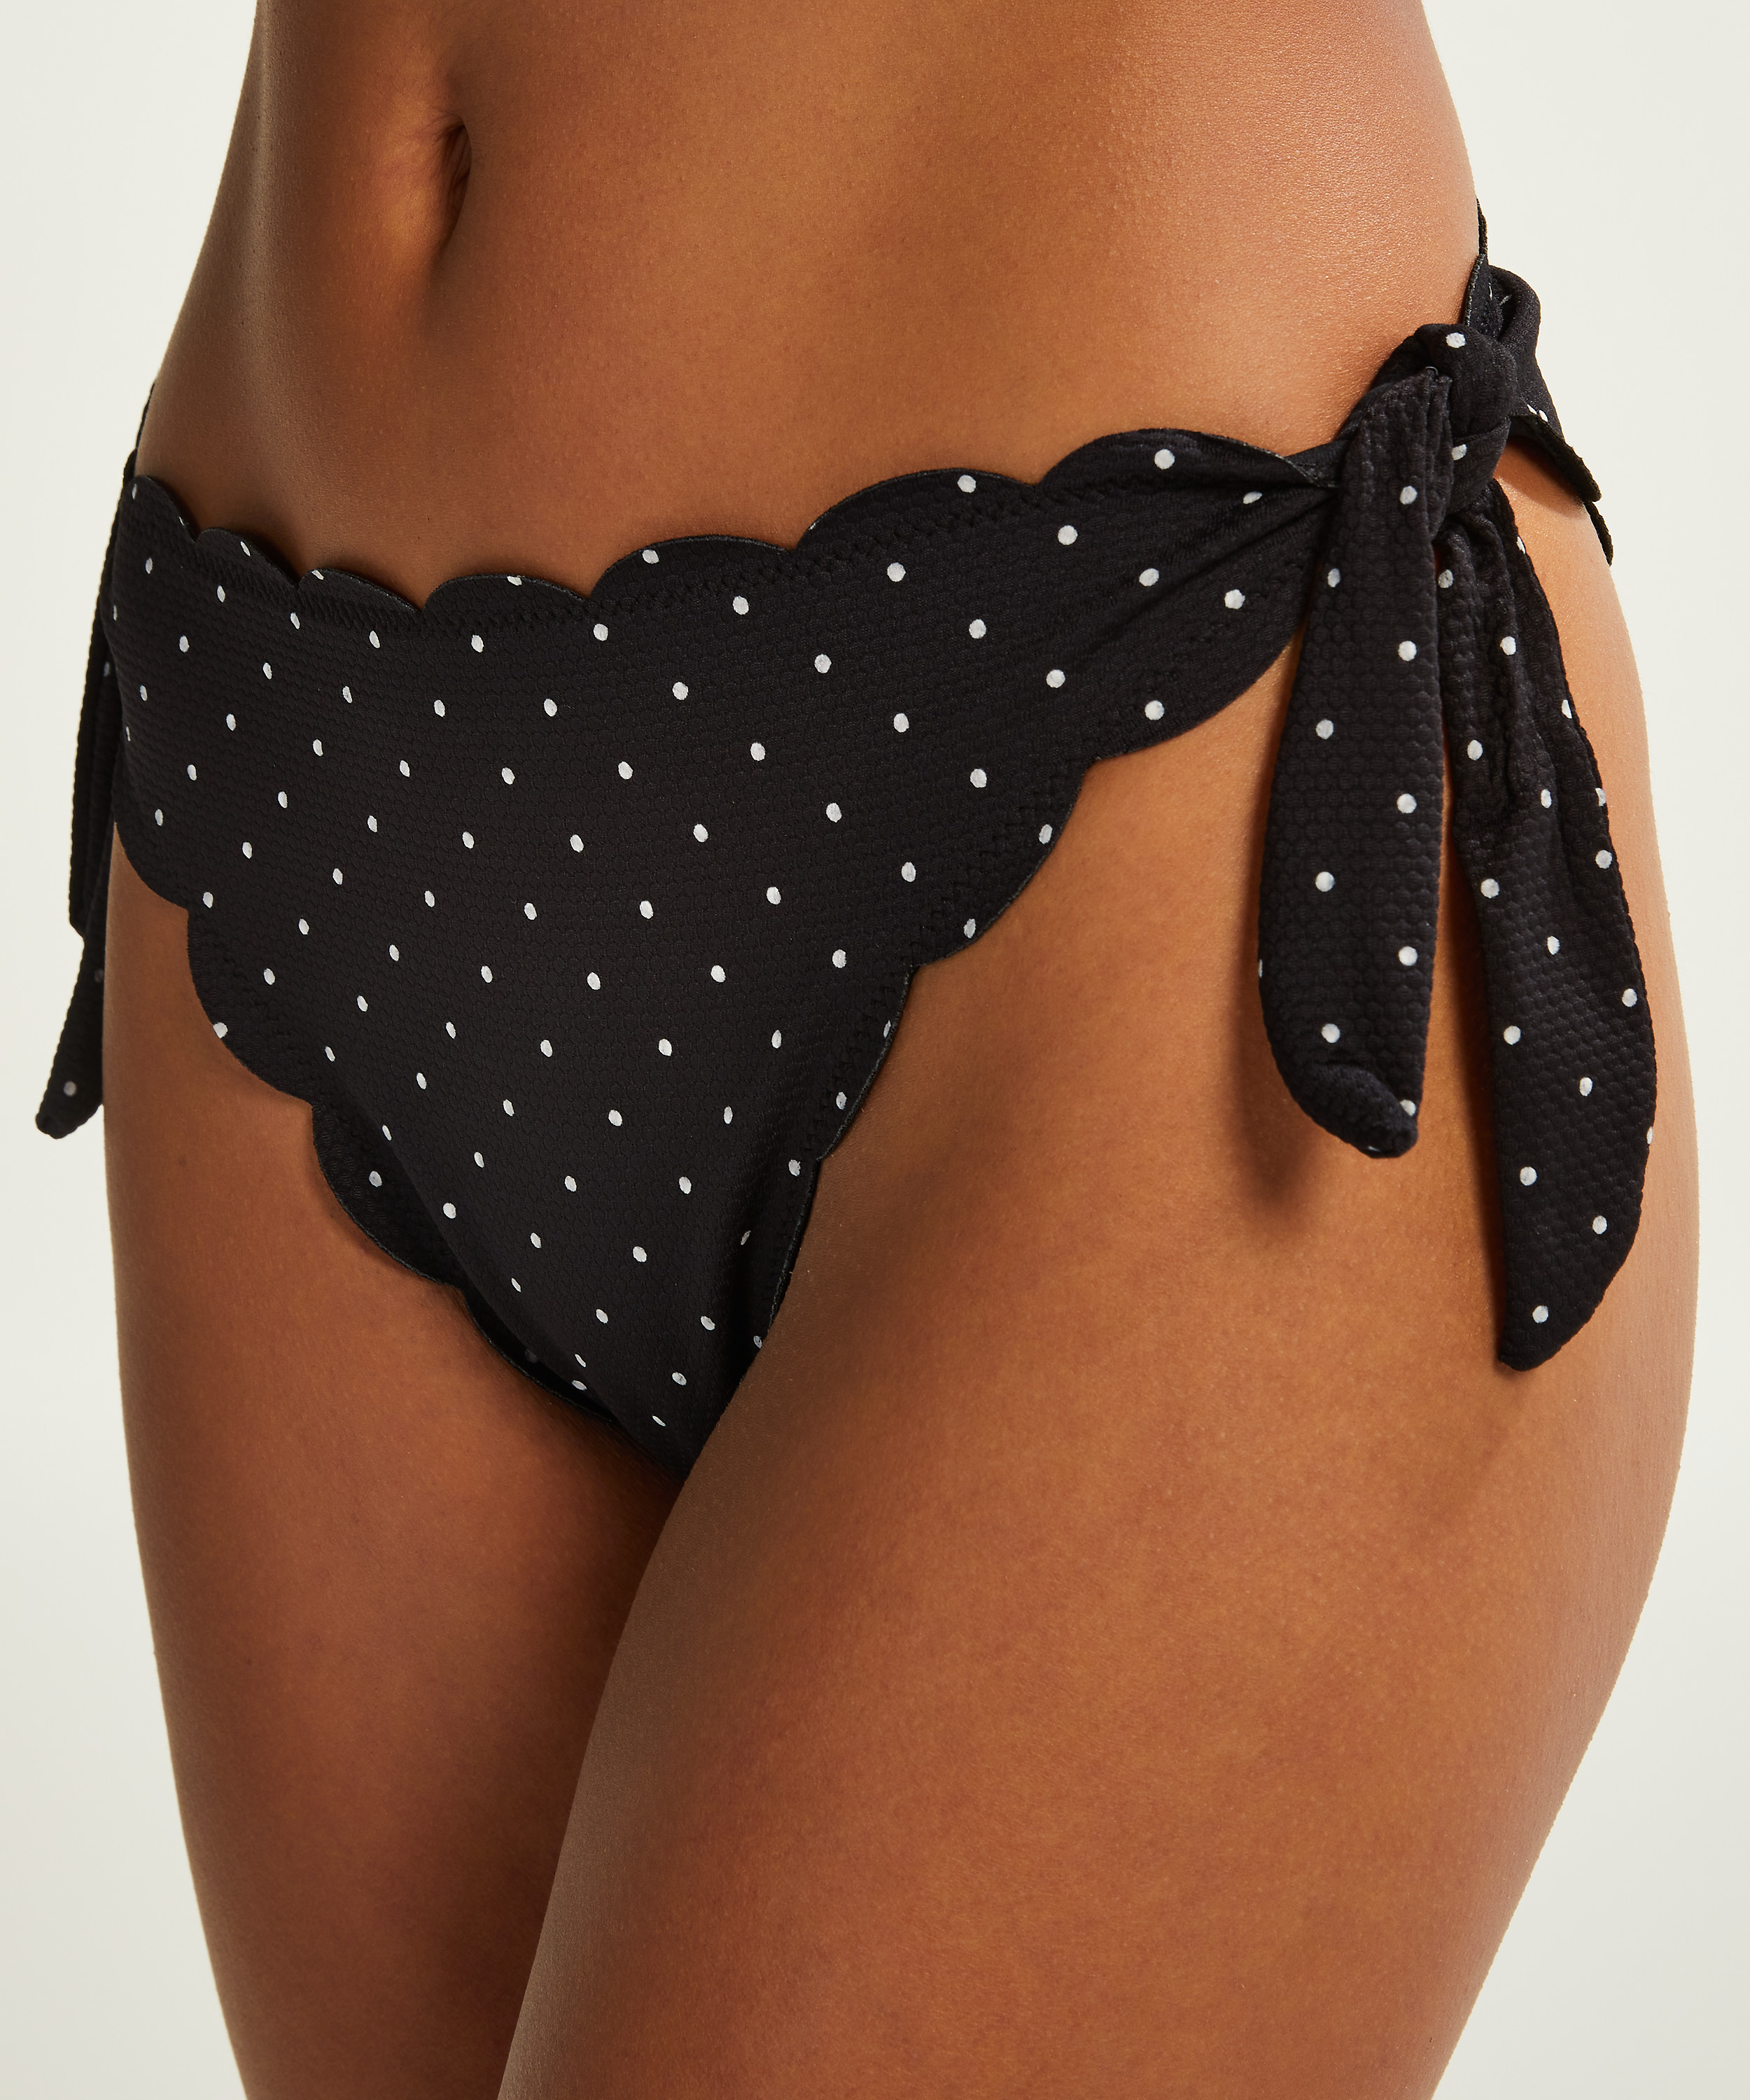 Scallop Dot cheeky bikini bottoms, Black, main